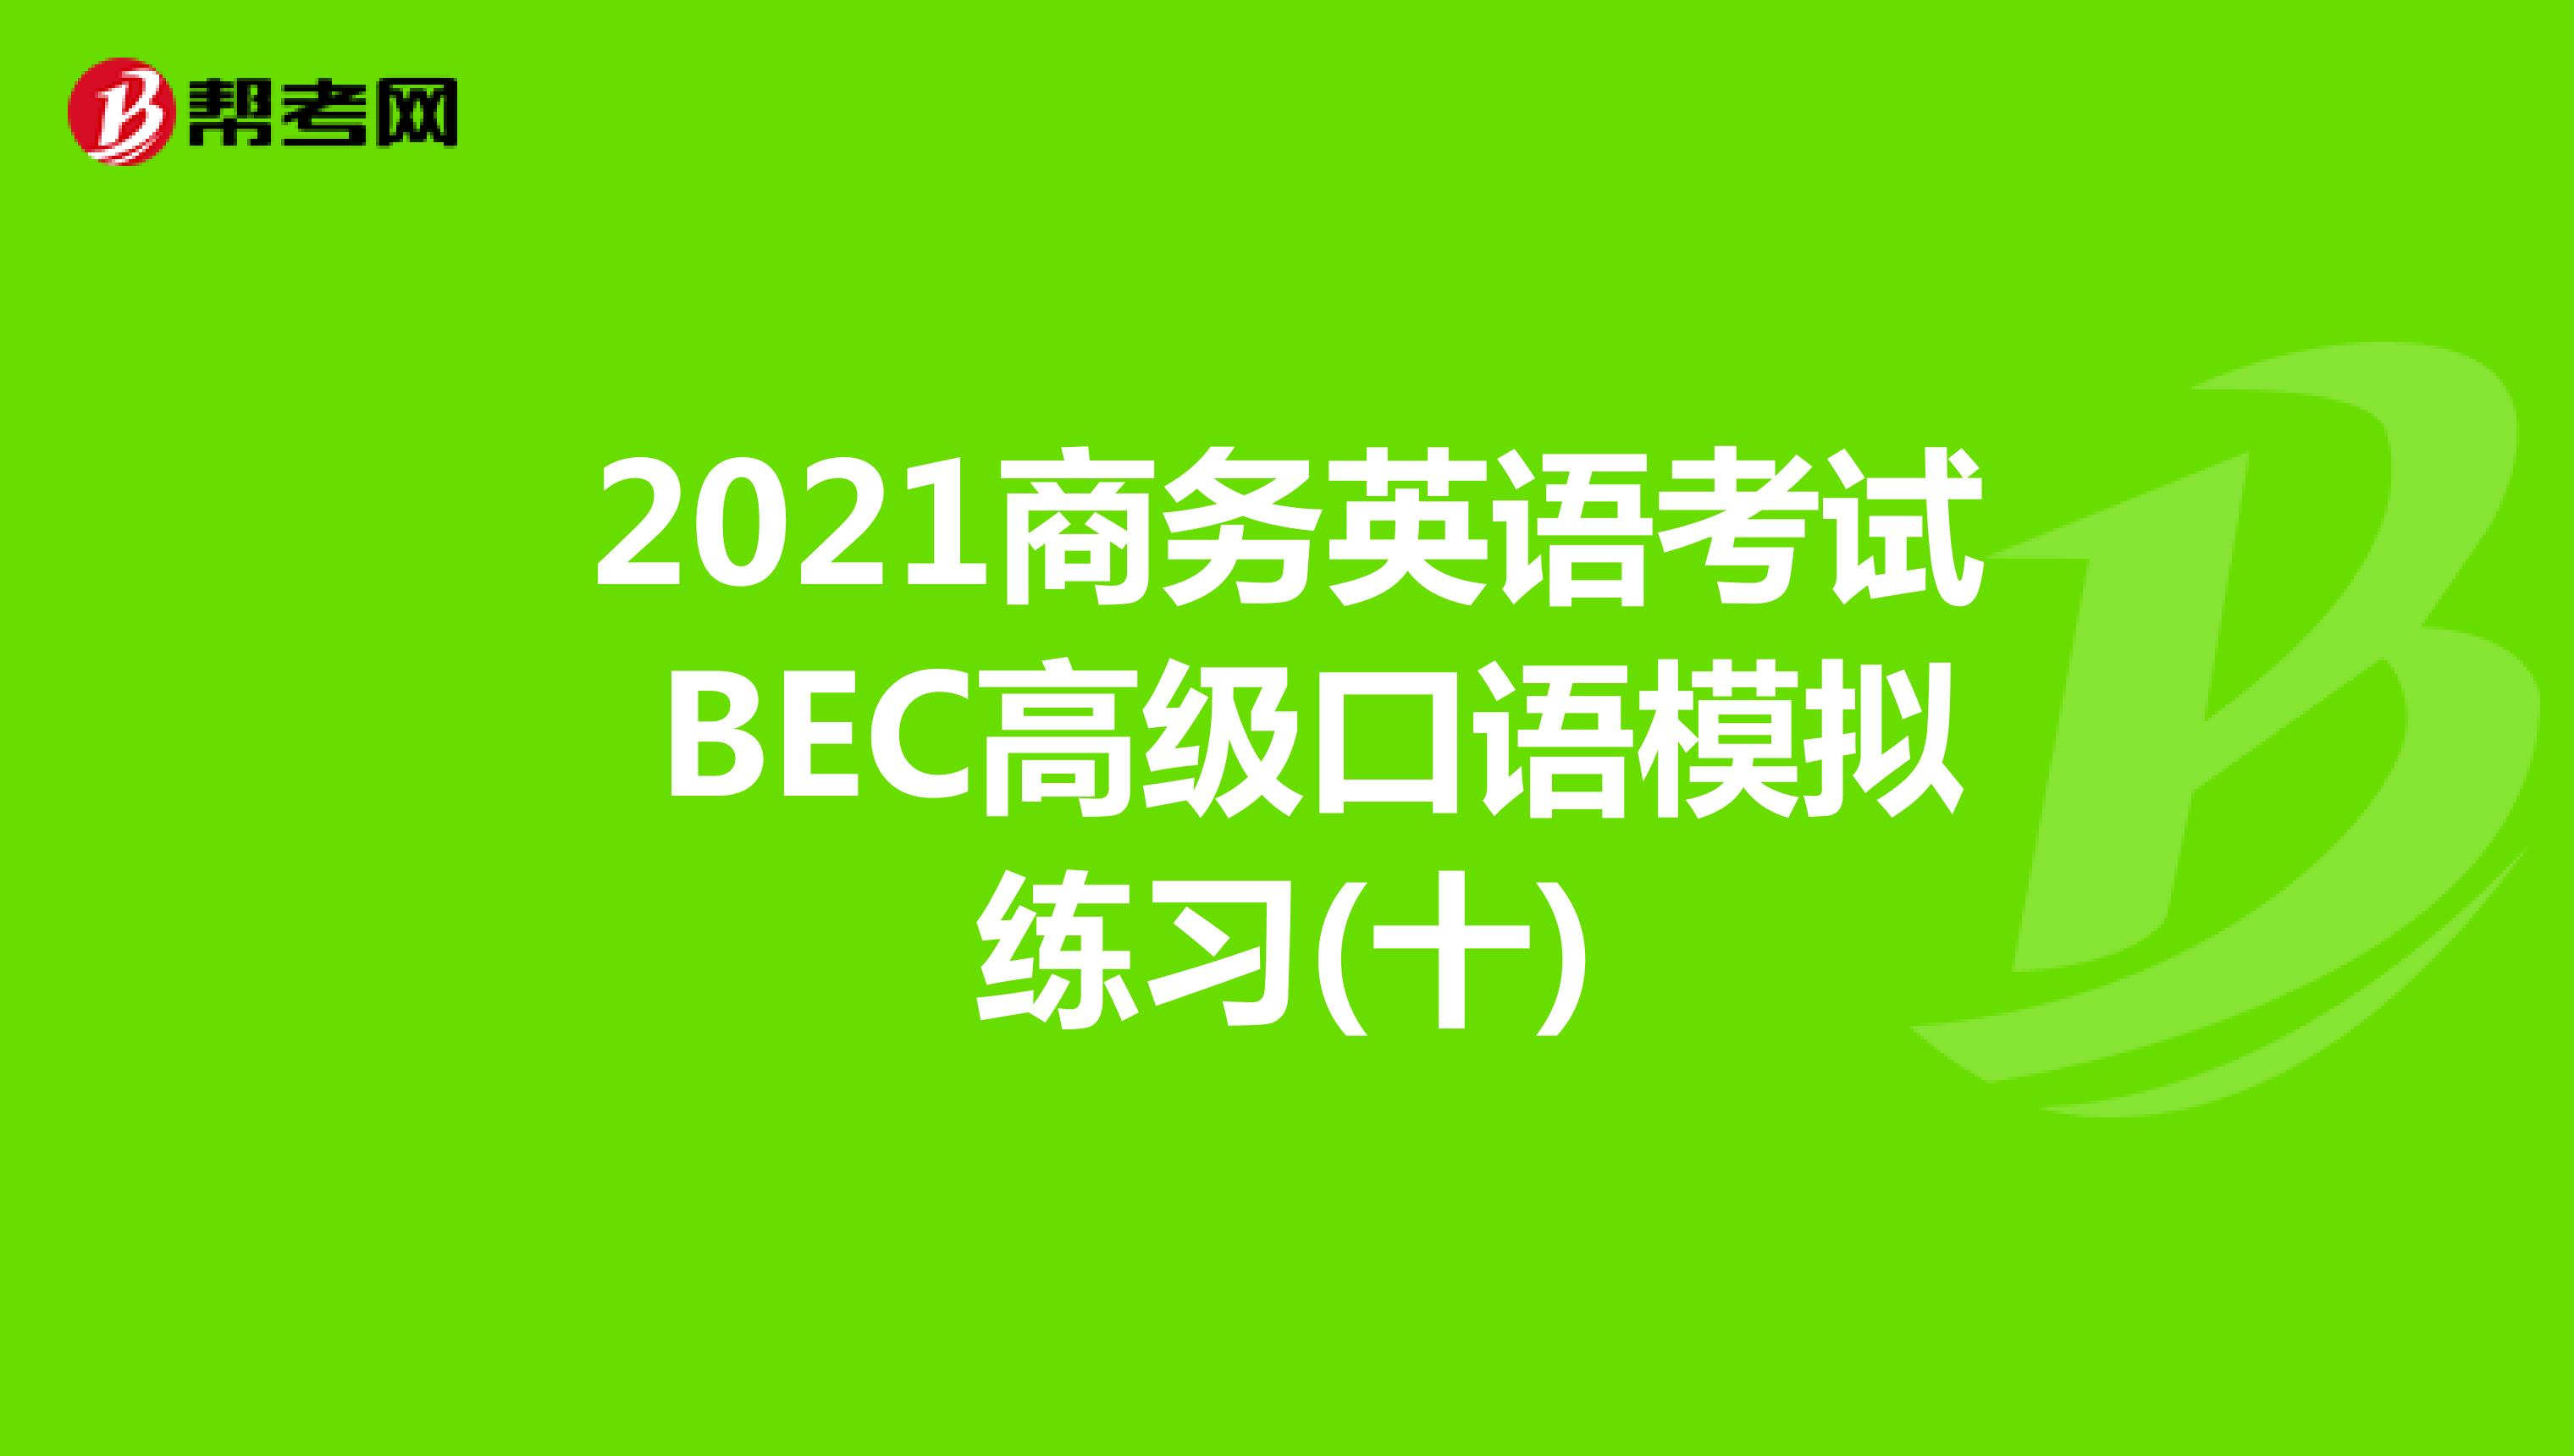 2021年商务英语考试BEC高级口语模拟练习(十)